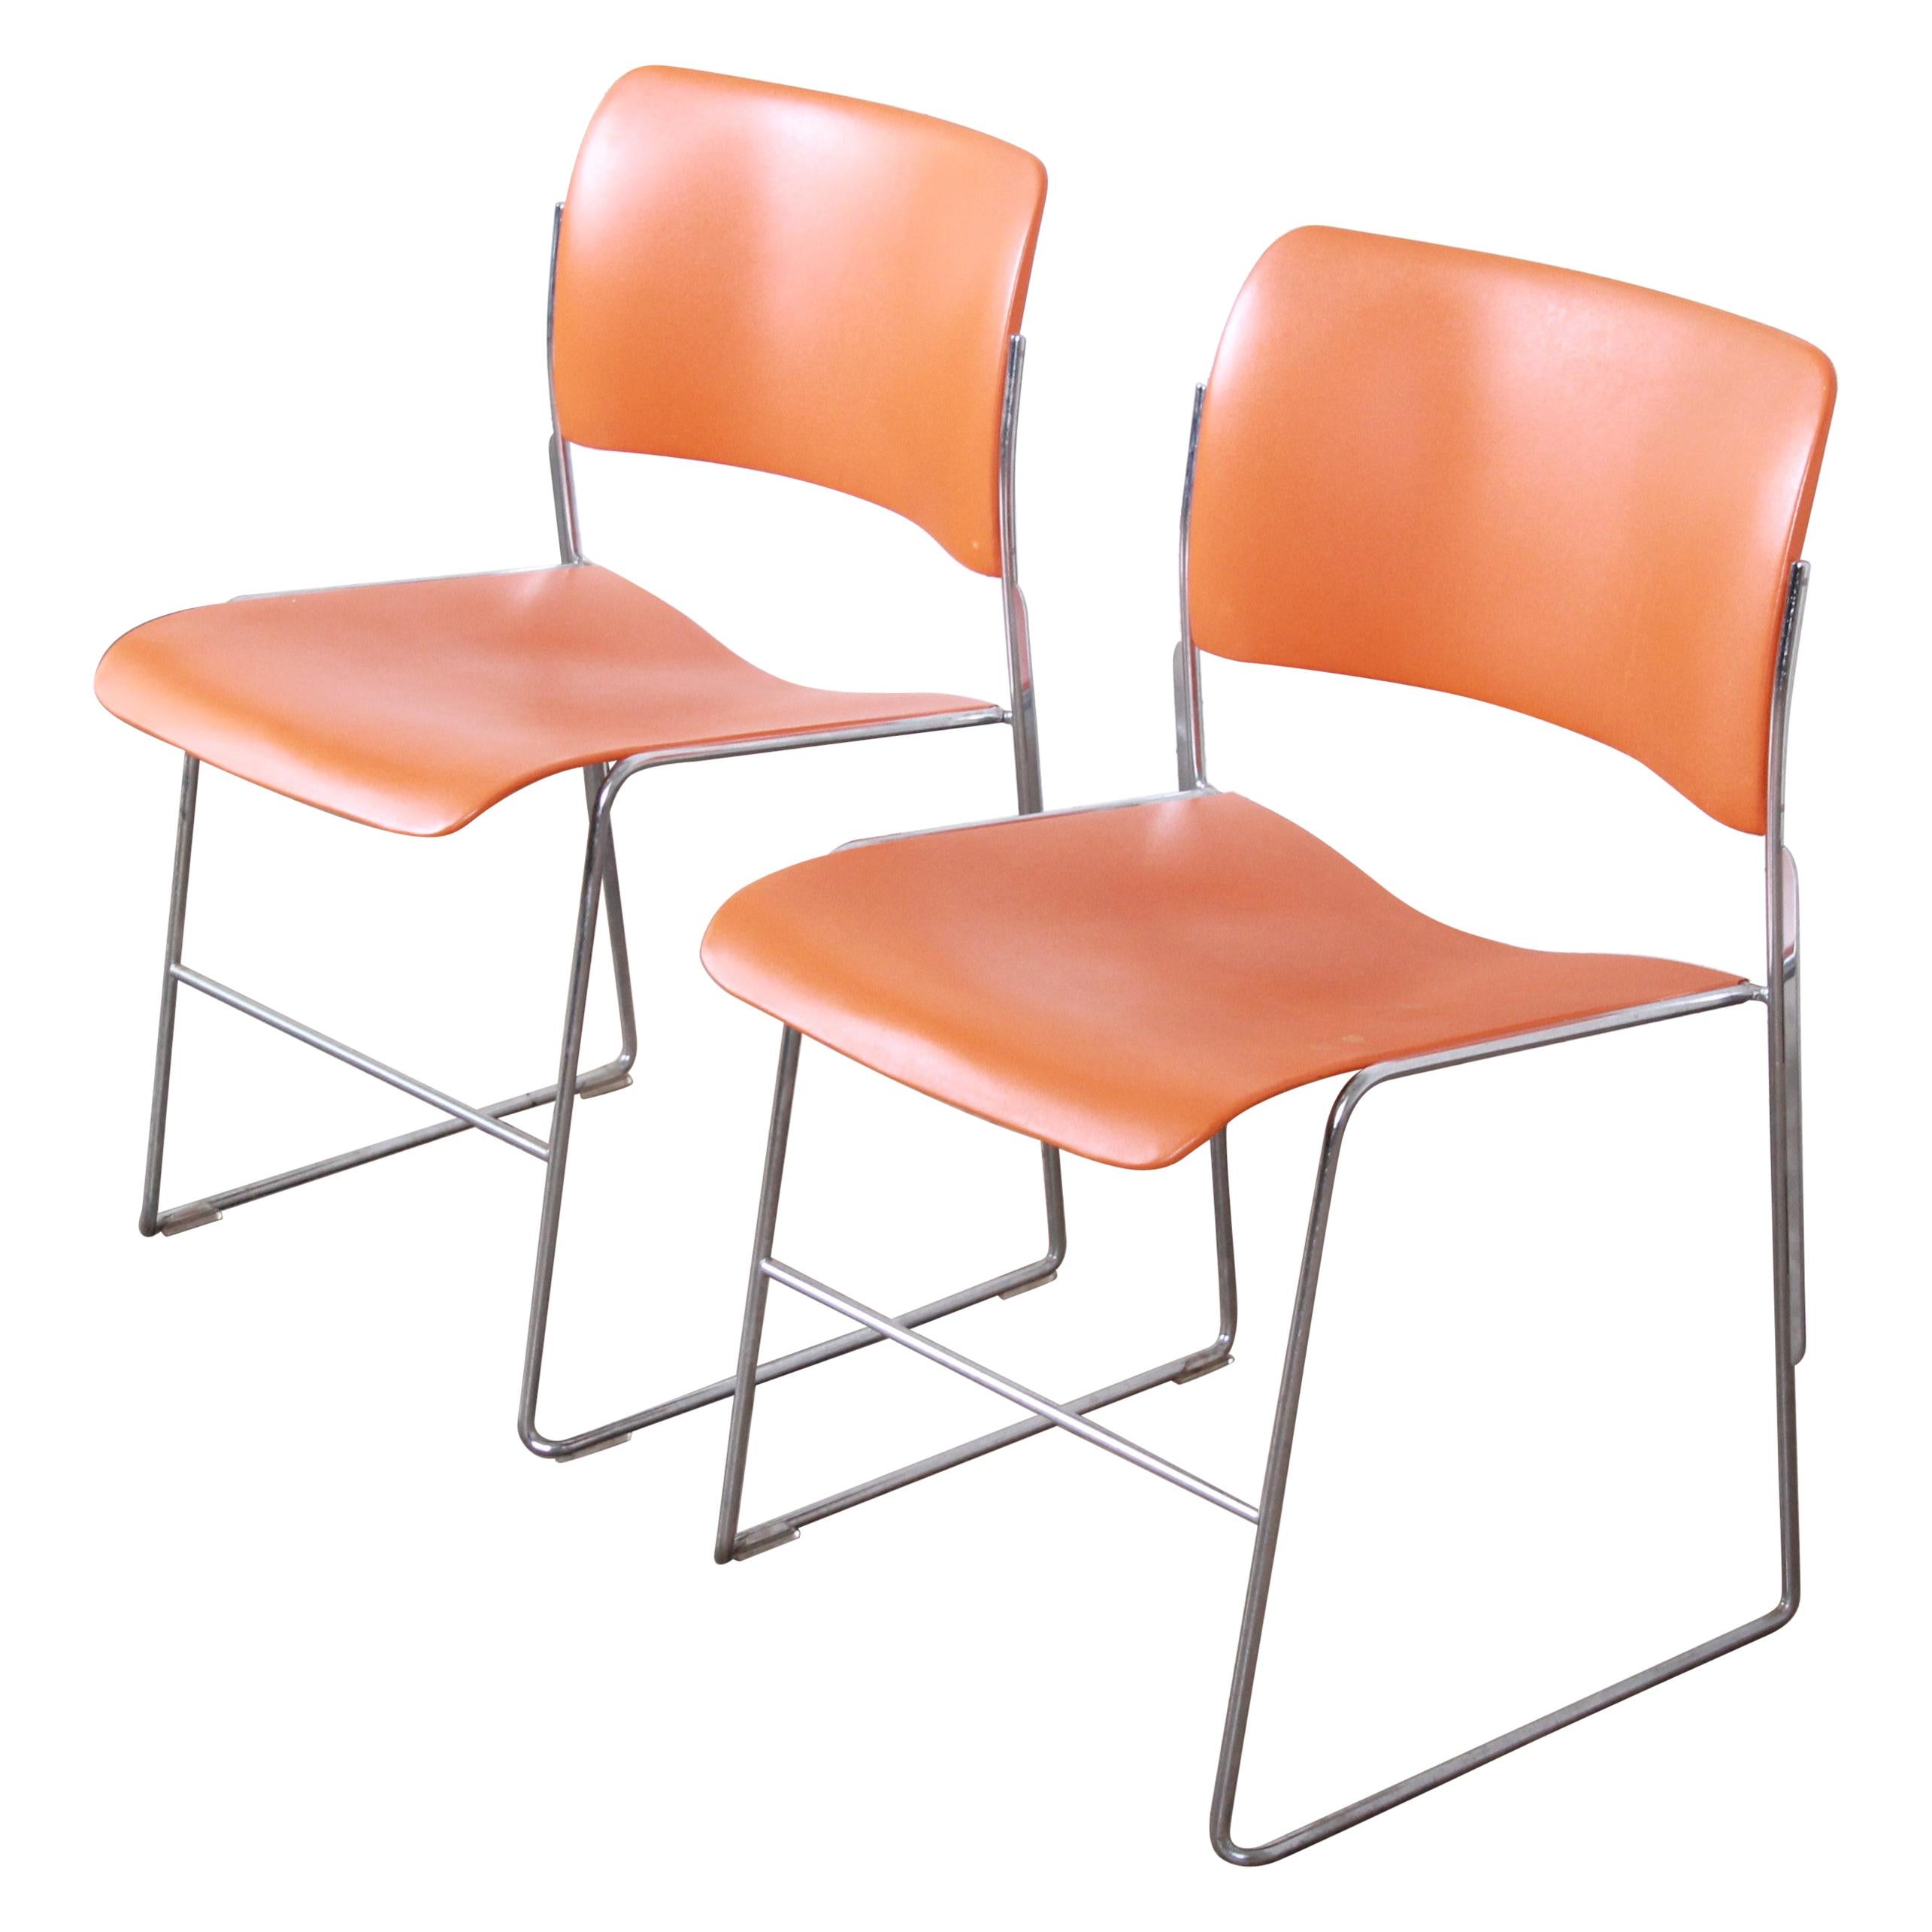 David Rowland 40/4 Orange and Chrome Stacking Chairs, Pair